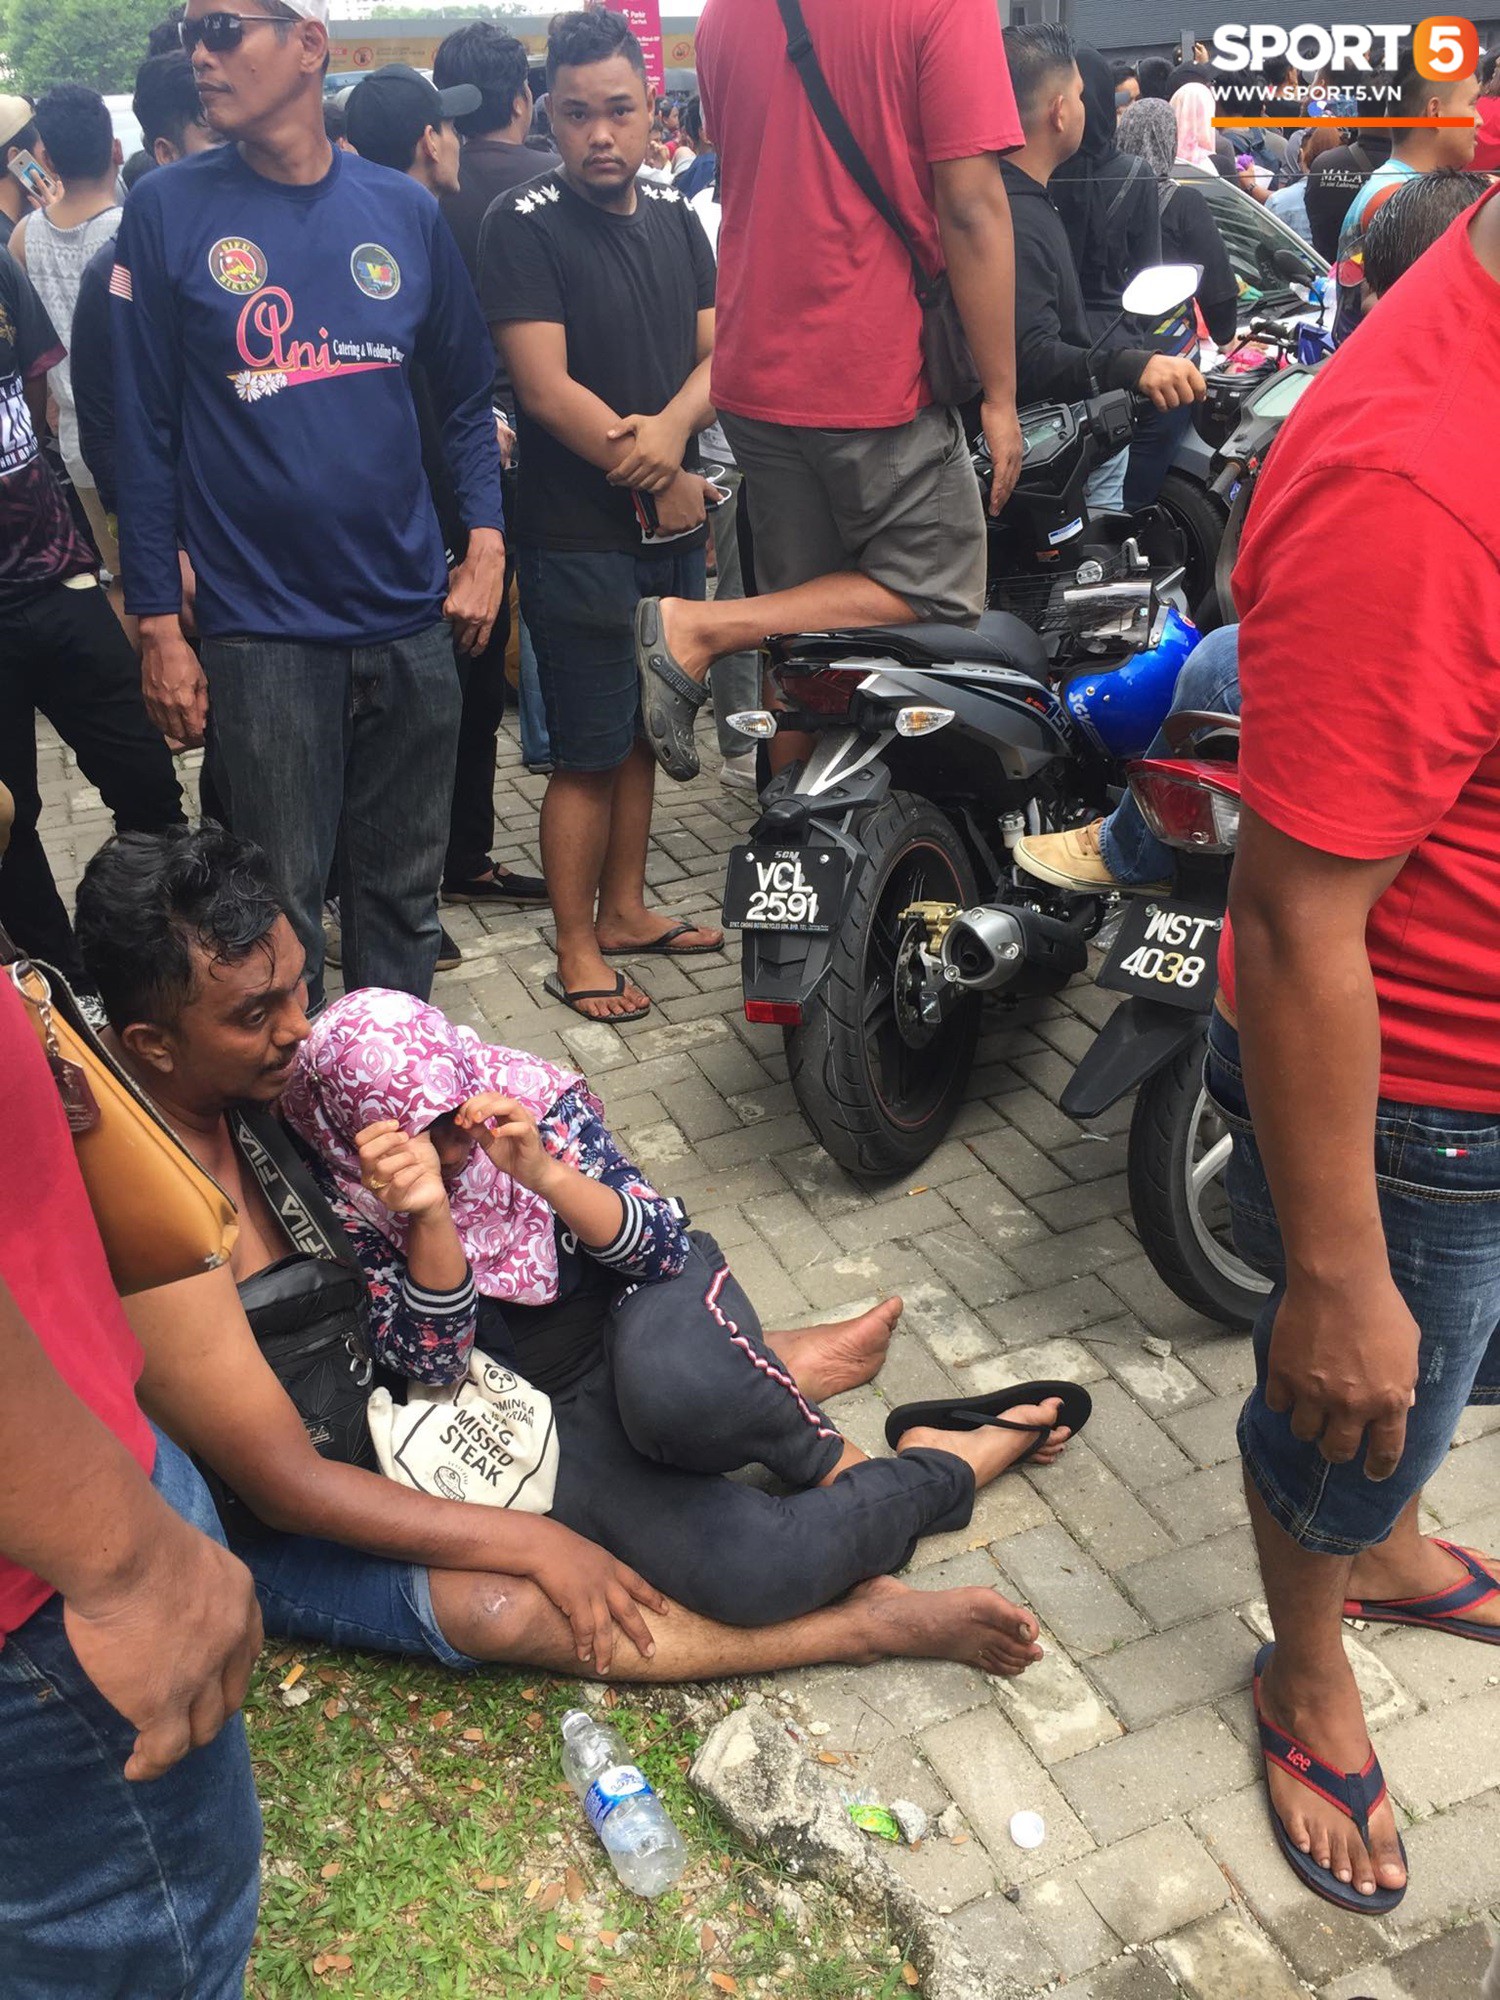 Kinh hoàng cảnh mua vé xem chung kết AFF Cup tại Malaysia: Nhiều người kiệt sức, nằm la liệt bên đường - Ảnh 7.